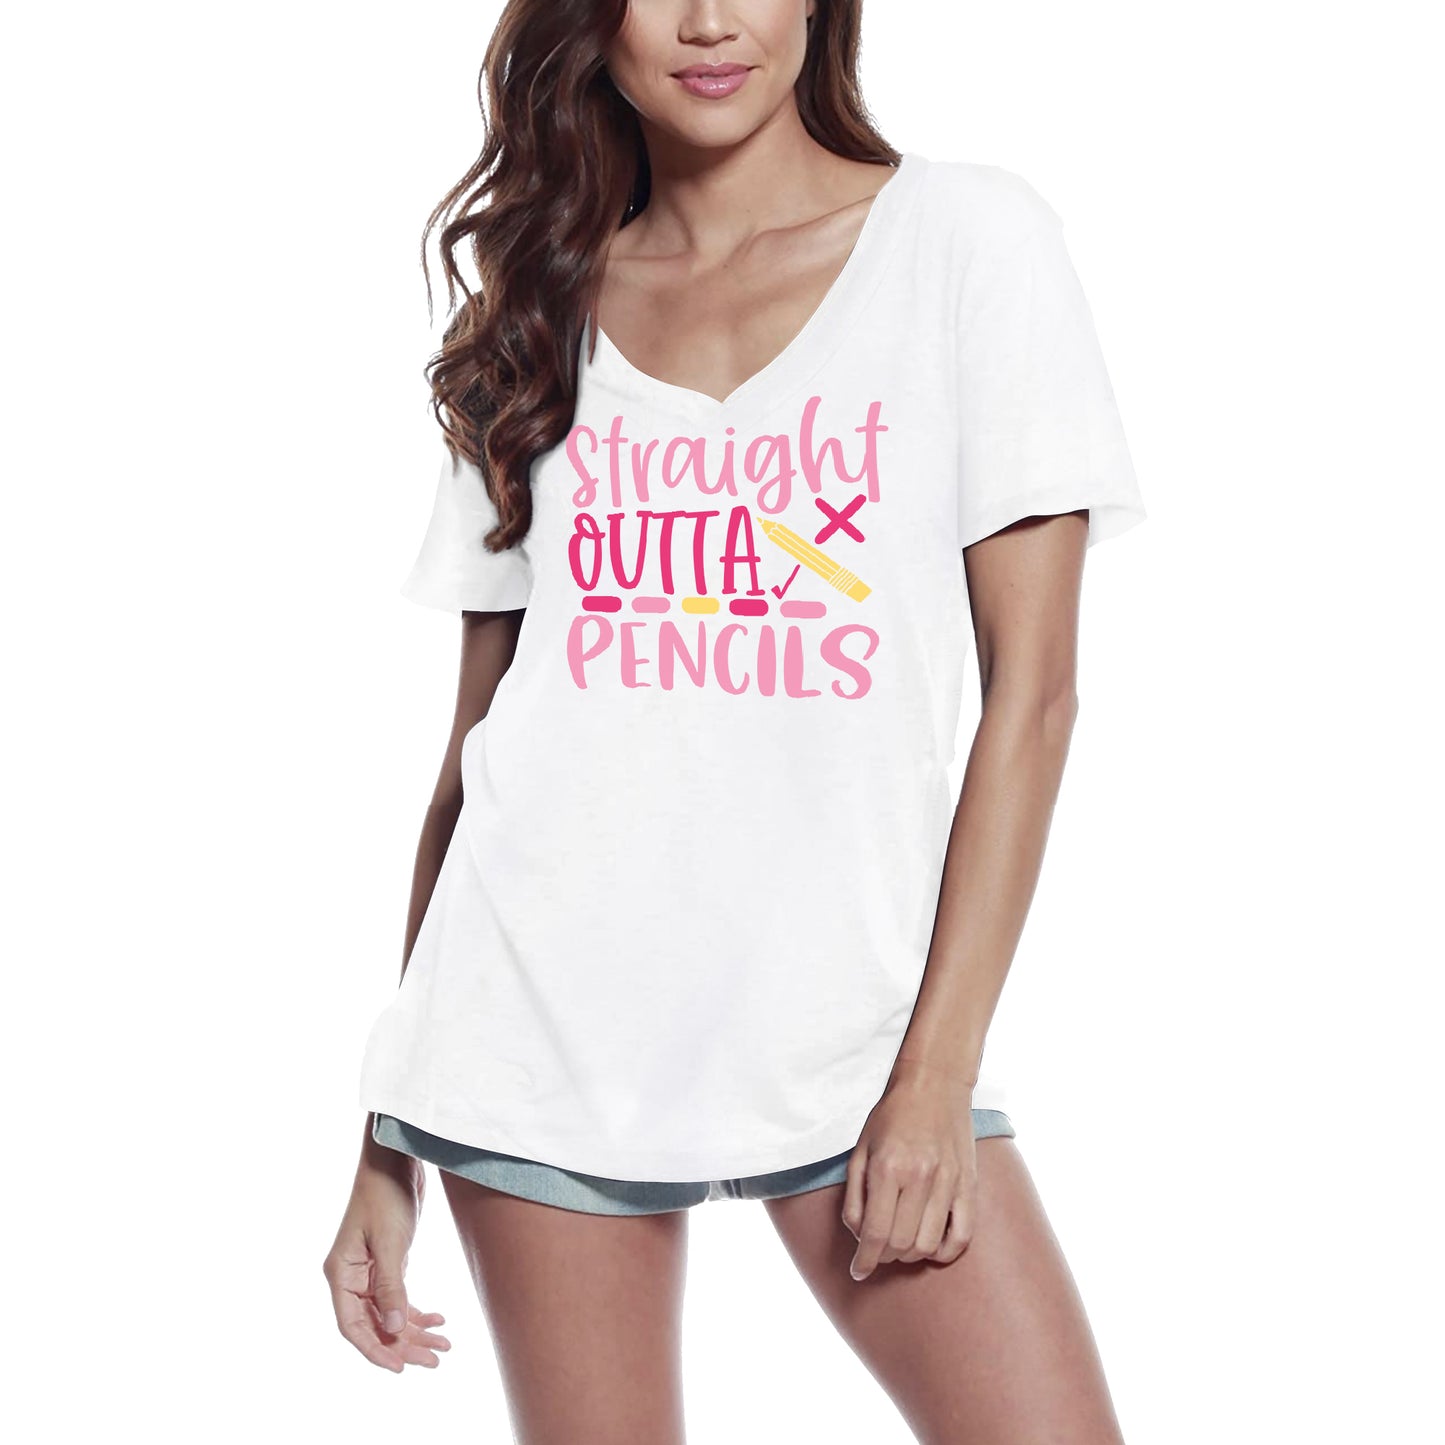 ULTRABASIC Women's T-Shirt Straight Outta Pencils - Short Sleeve Tee Shirt Tops